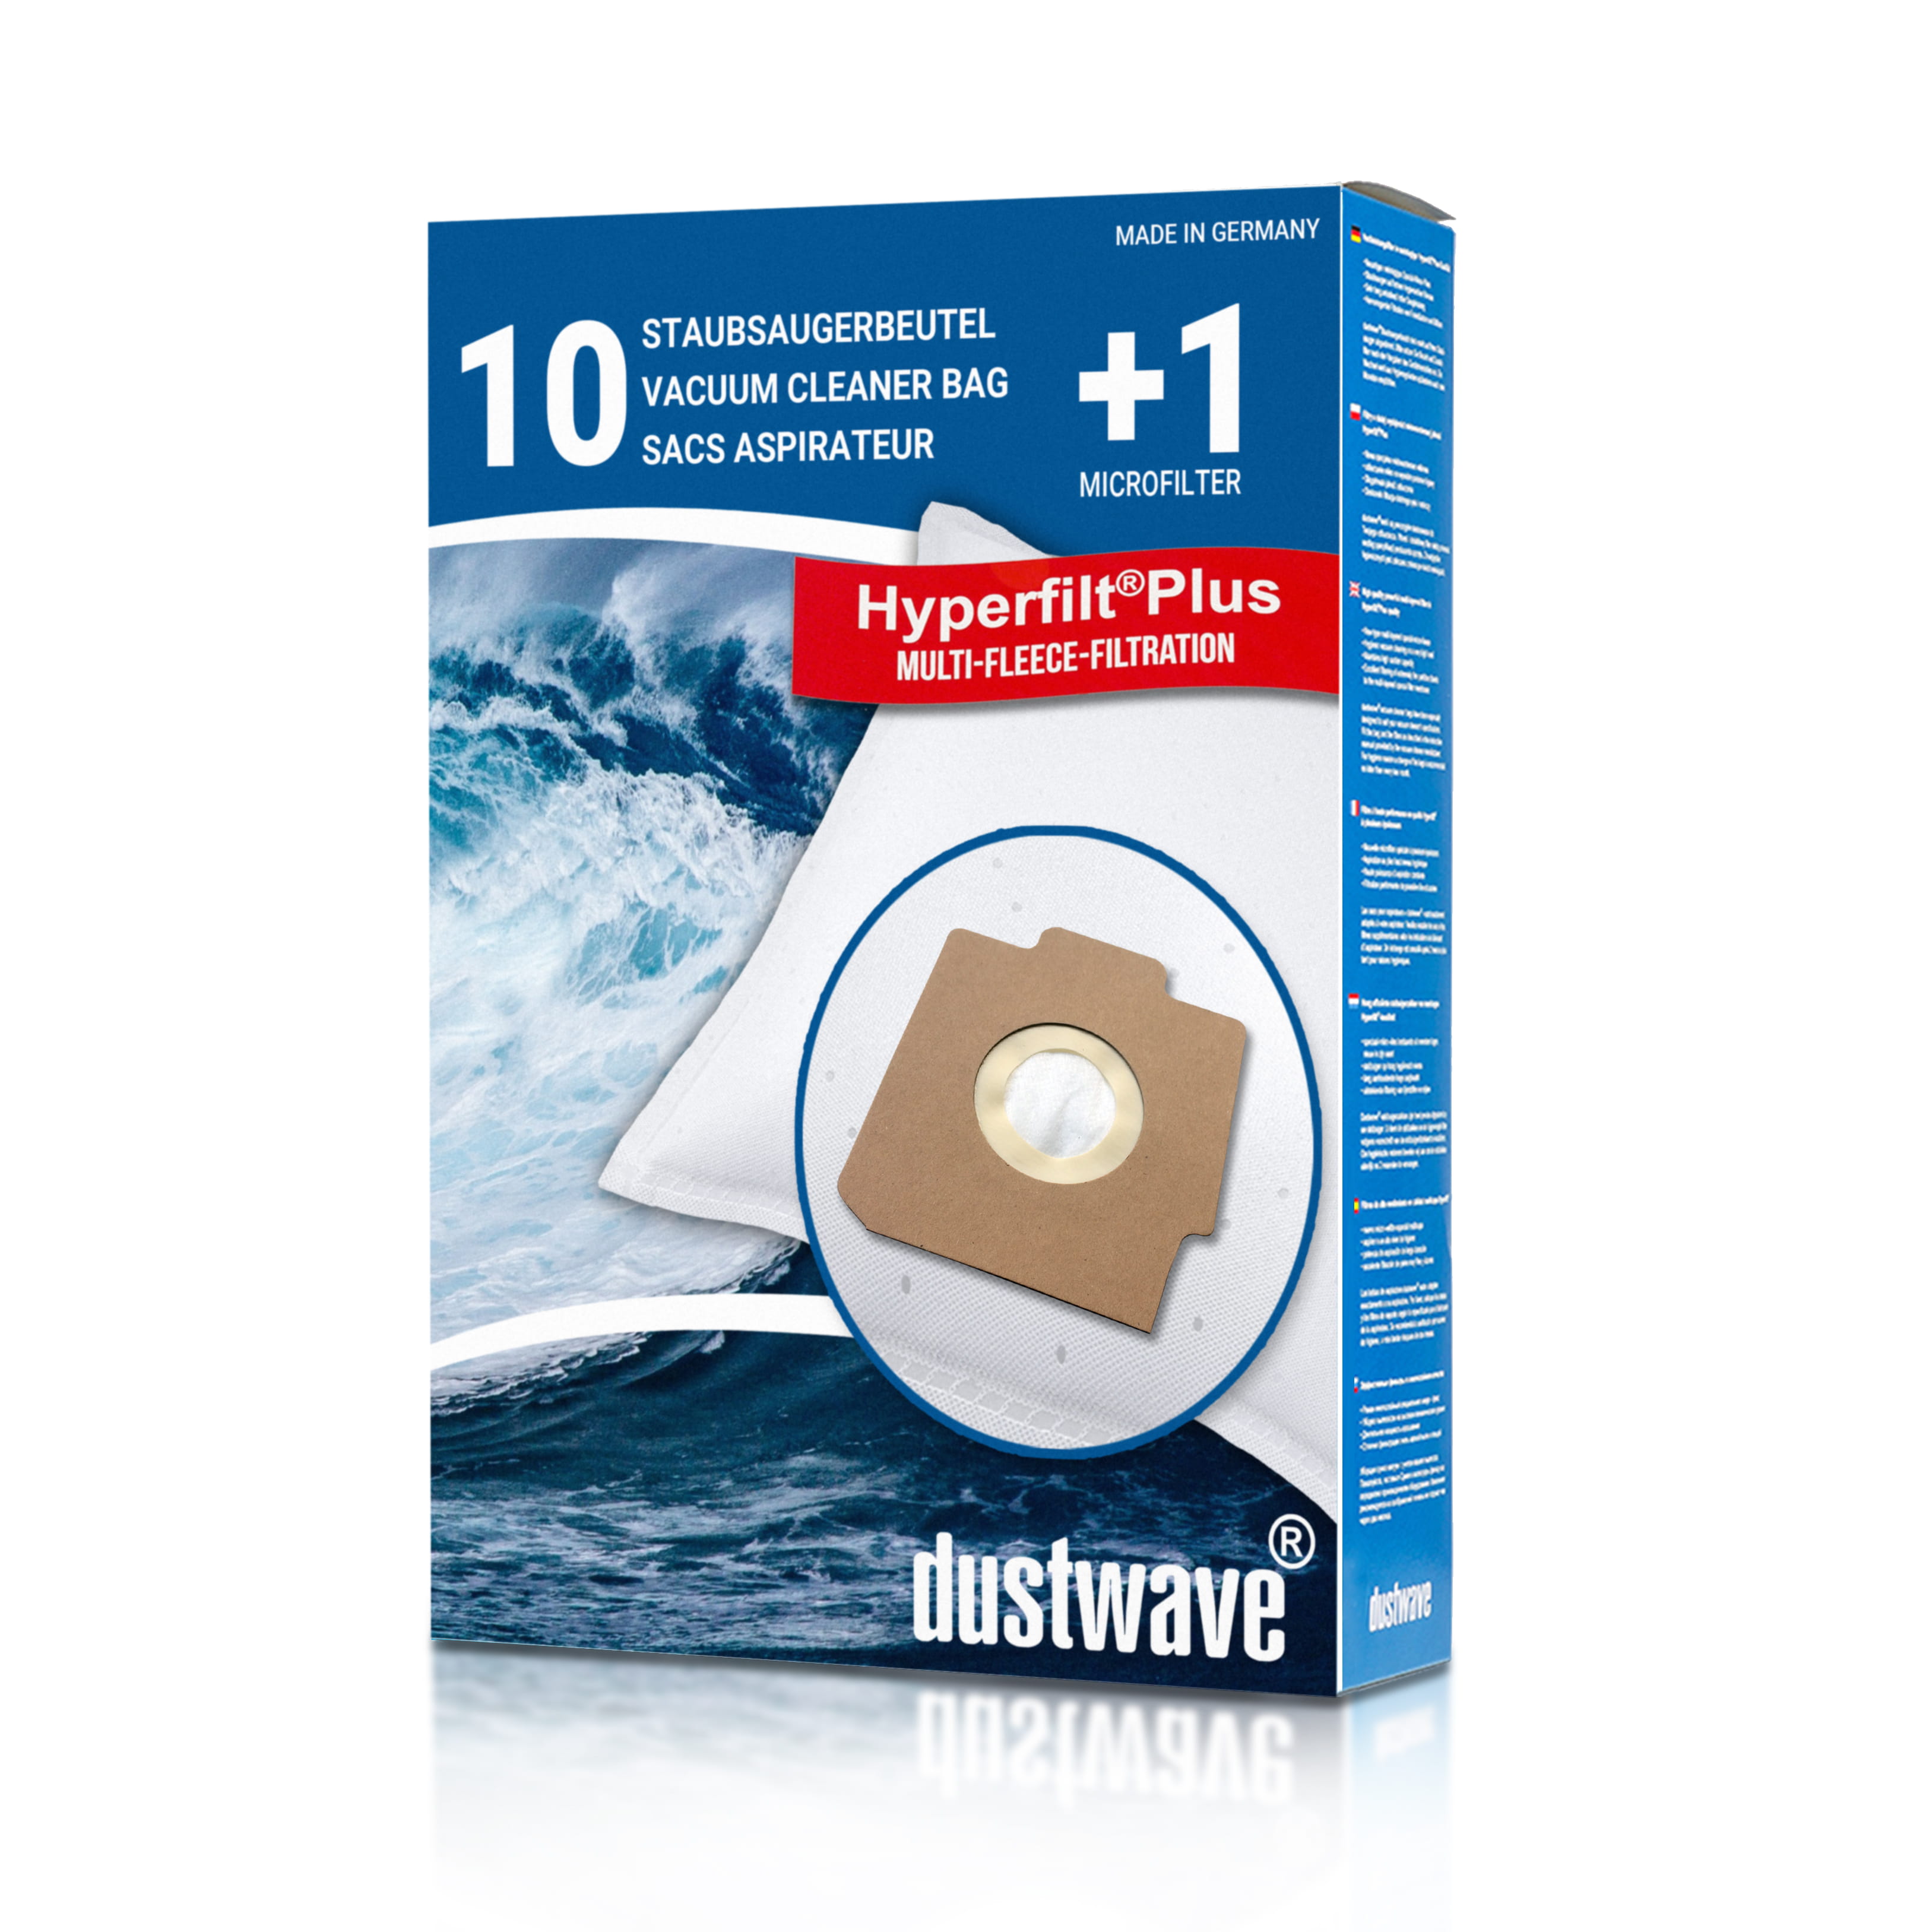 Dustwave® 10 Staubsaugerbeutel für Hoover Sensotronic System 100 - hocheffizient, mehrlagiges Mikrovlies mit Hygieneverschluss - Made in Germany